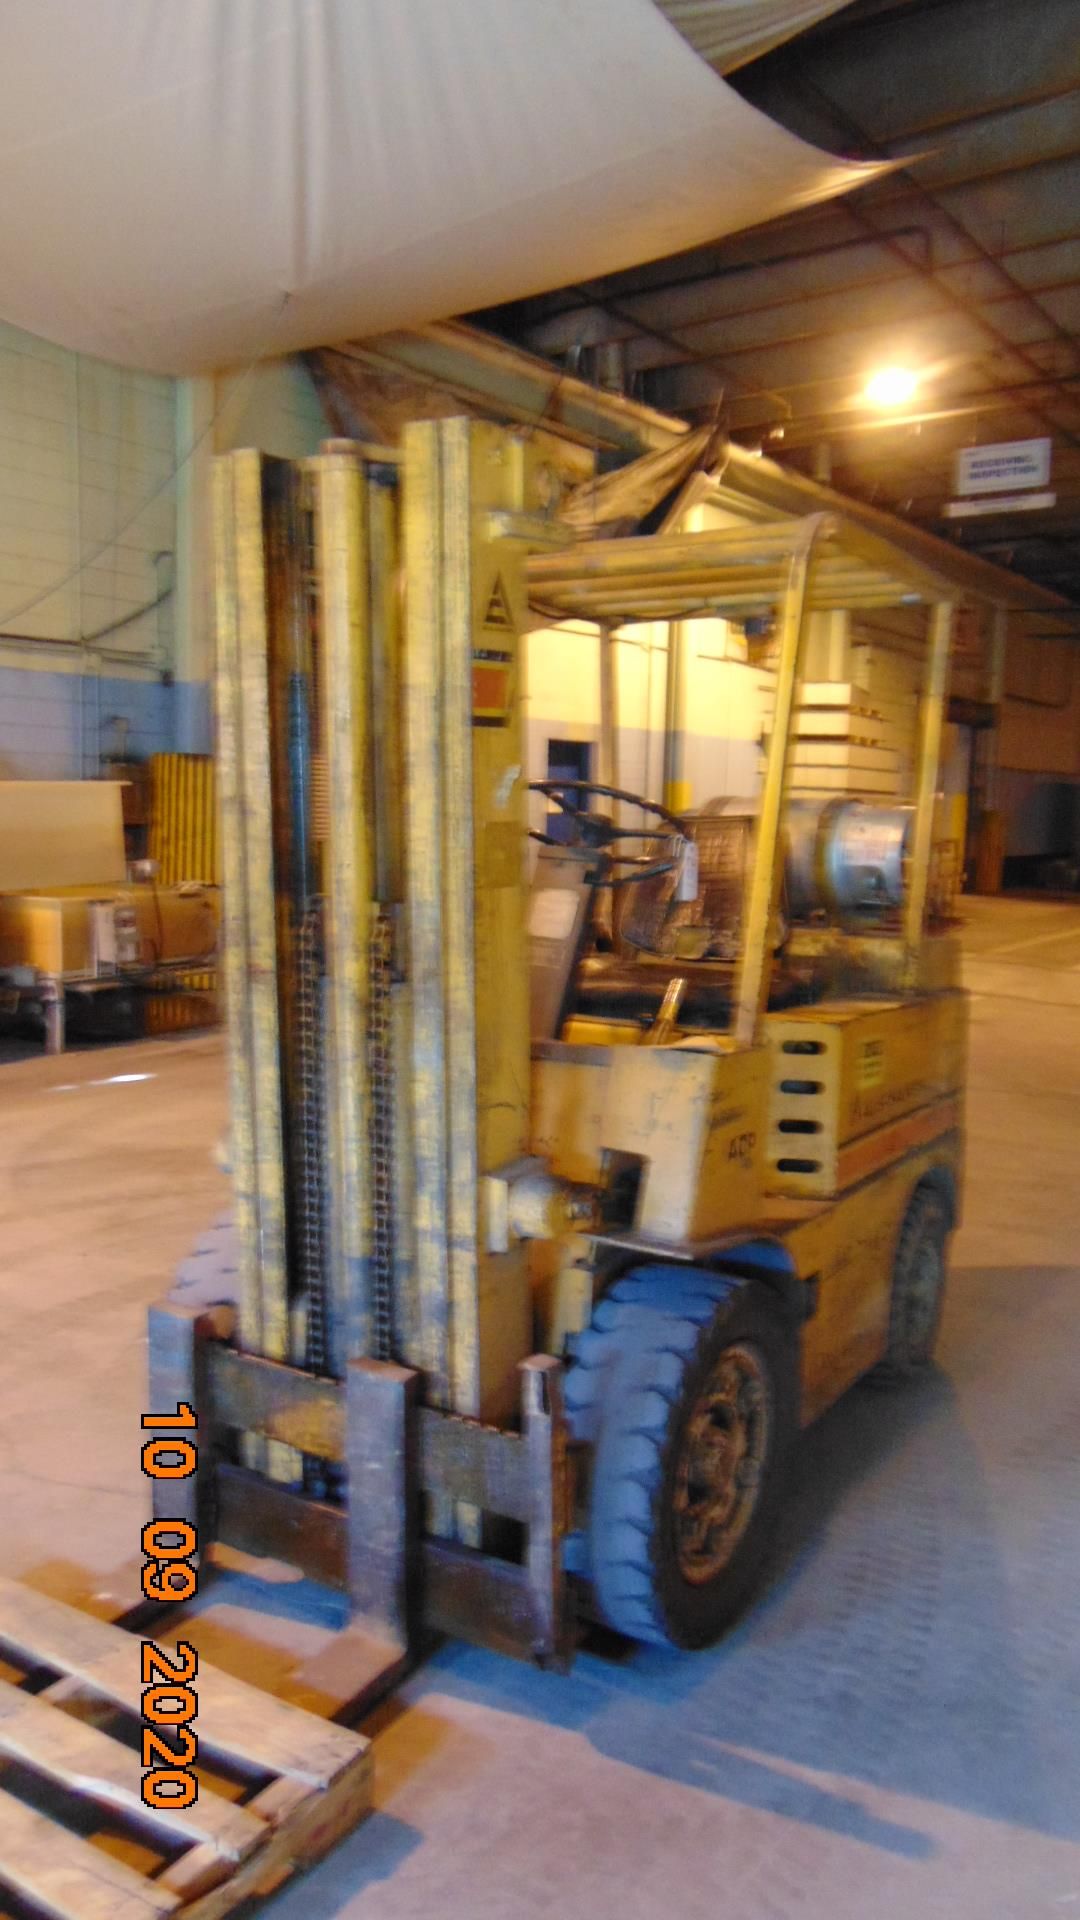 Allis-Chalmers Forklift - Image 2 of 4